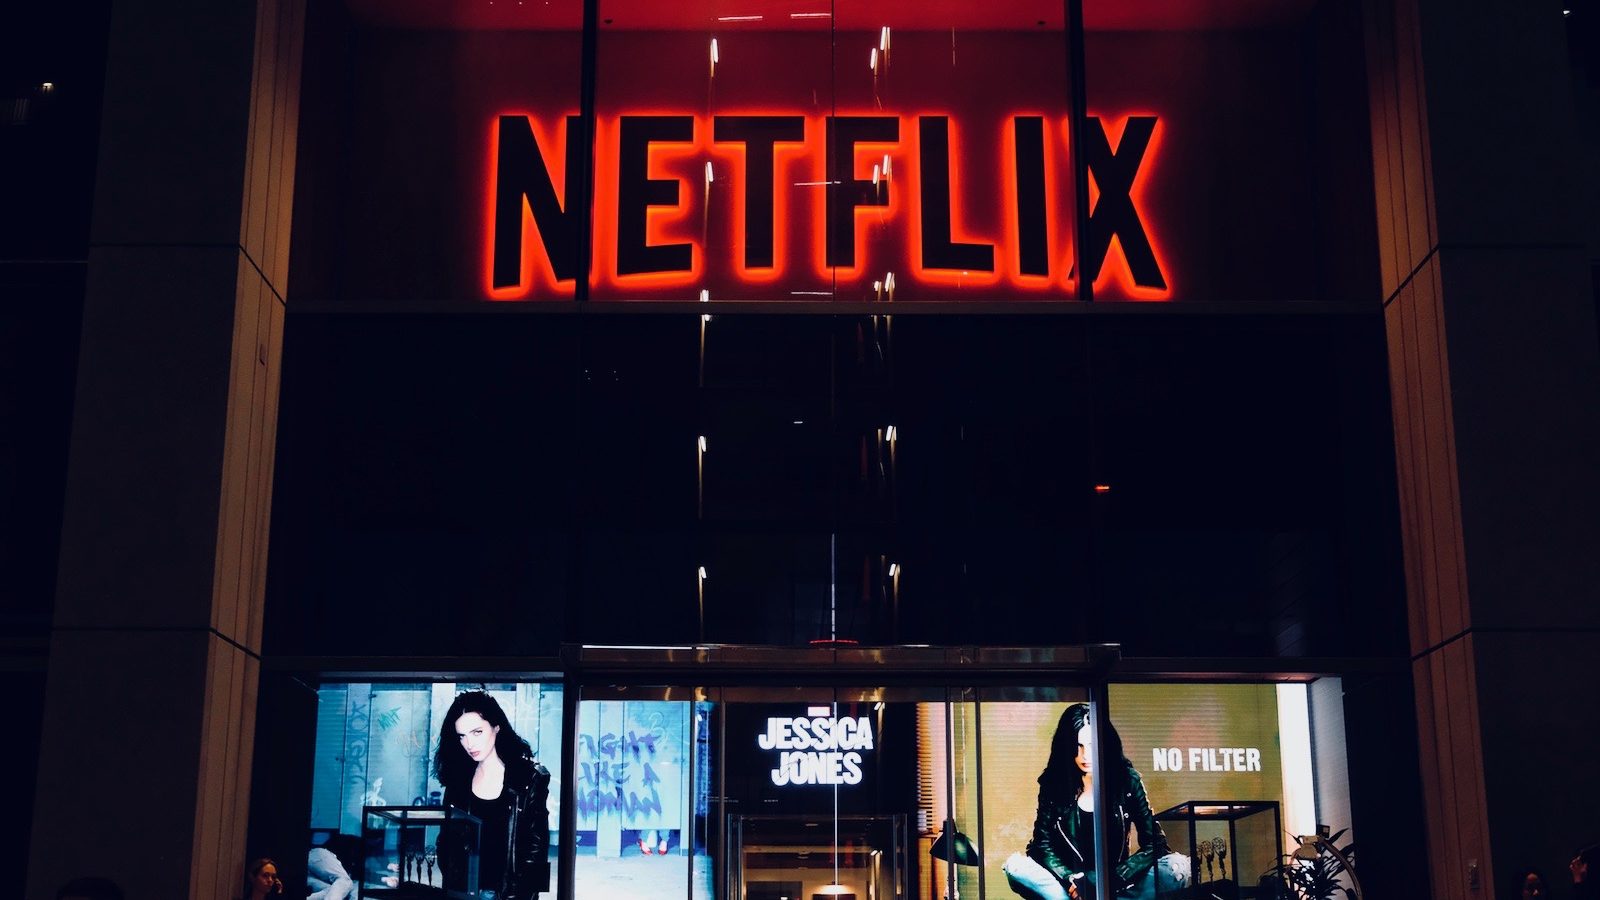 Netflix Türkiye zam